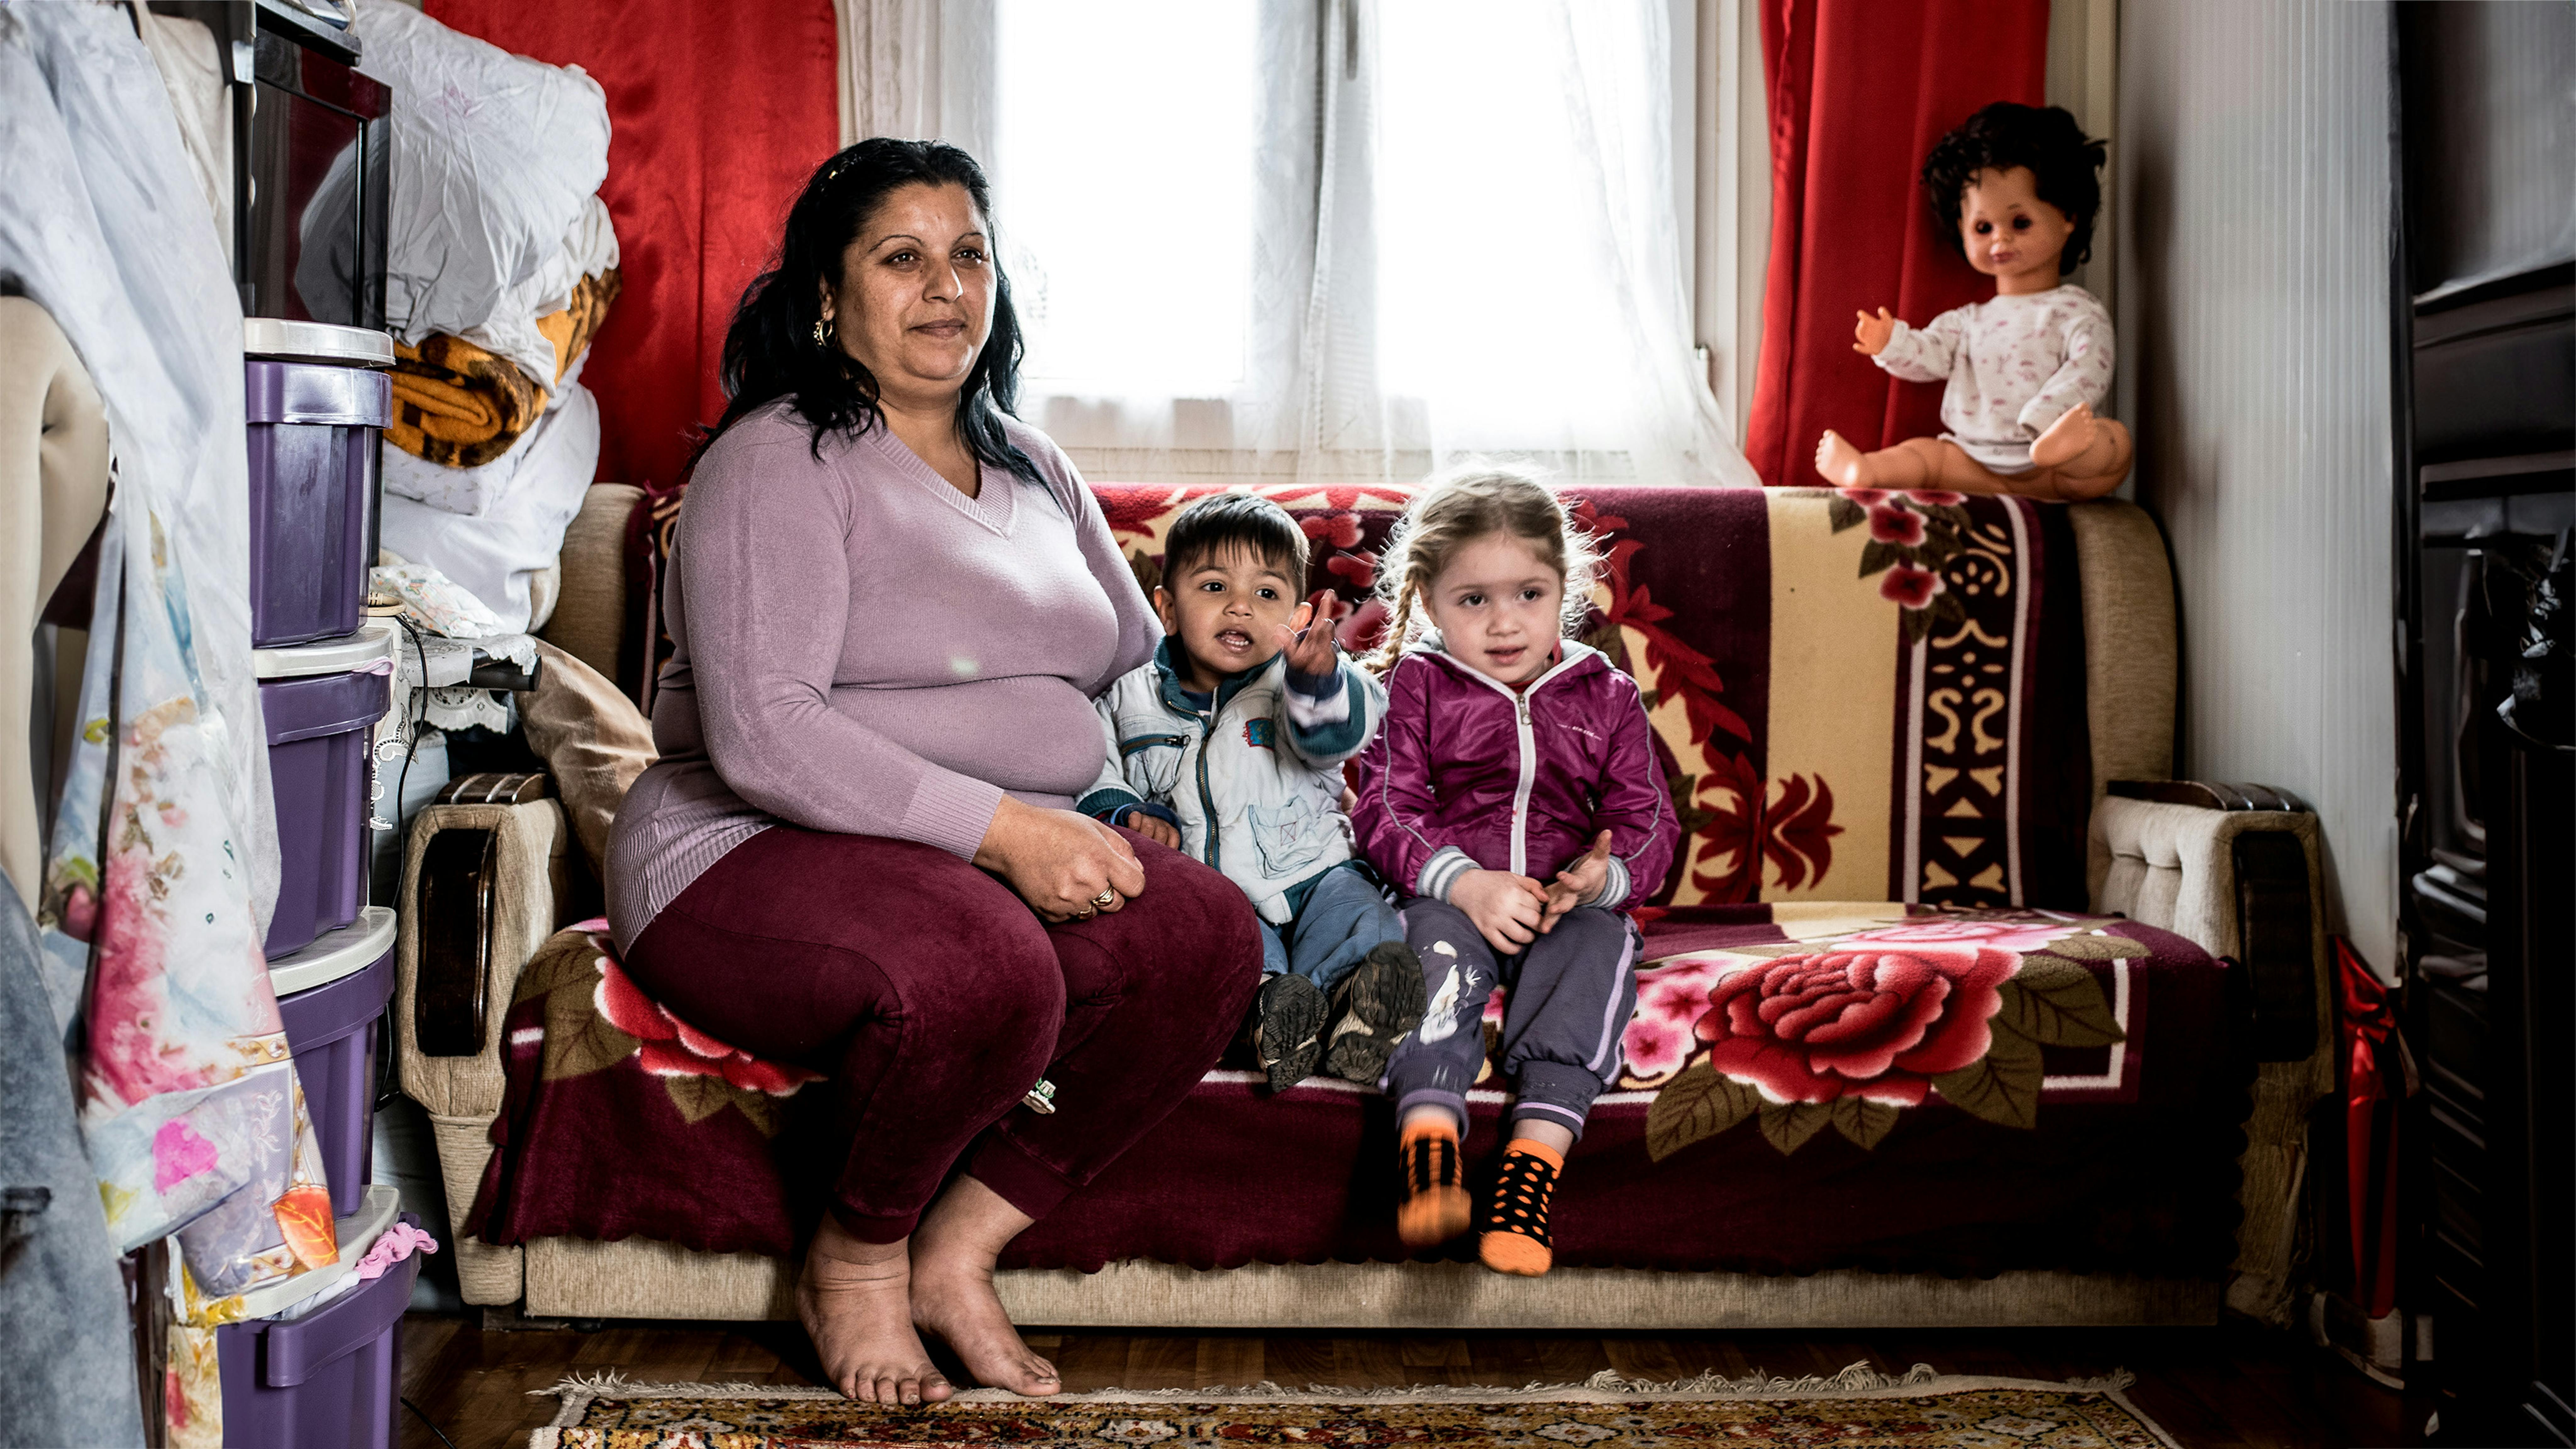 Serbia - Sonja Selimovic, 38 anni, e i suoi figli, Andelja, 3,5 anni e Alan, 1 anno e 8 mesi, nella loro casa in un insediamento rom a Palilula, alla periferia di Belgrado